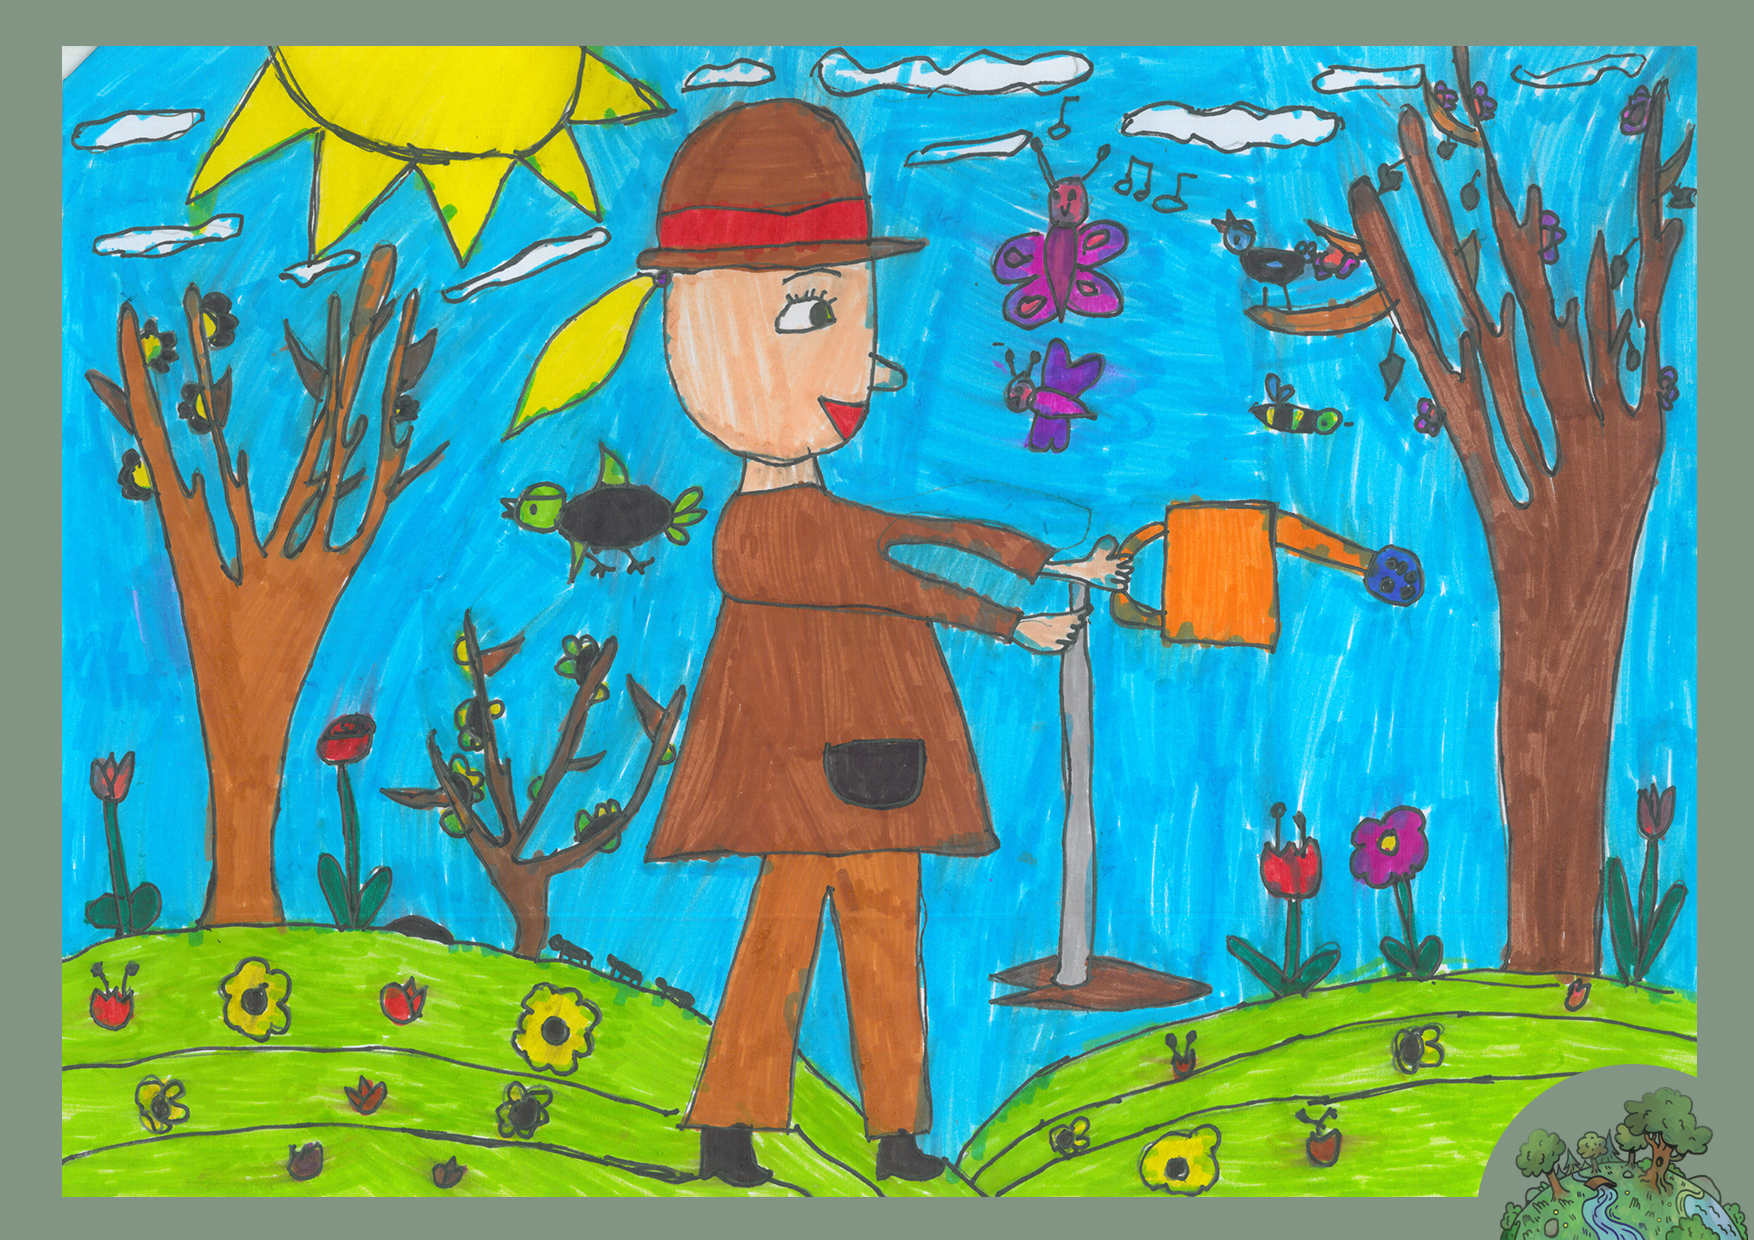 Molnár Jázmin Judit, 7,5 éves<br />A kép címe: Kertünk gondozása<br />Alkalmazott technika: filctoll